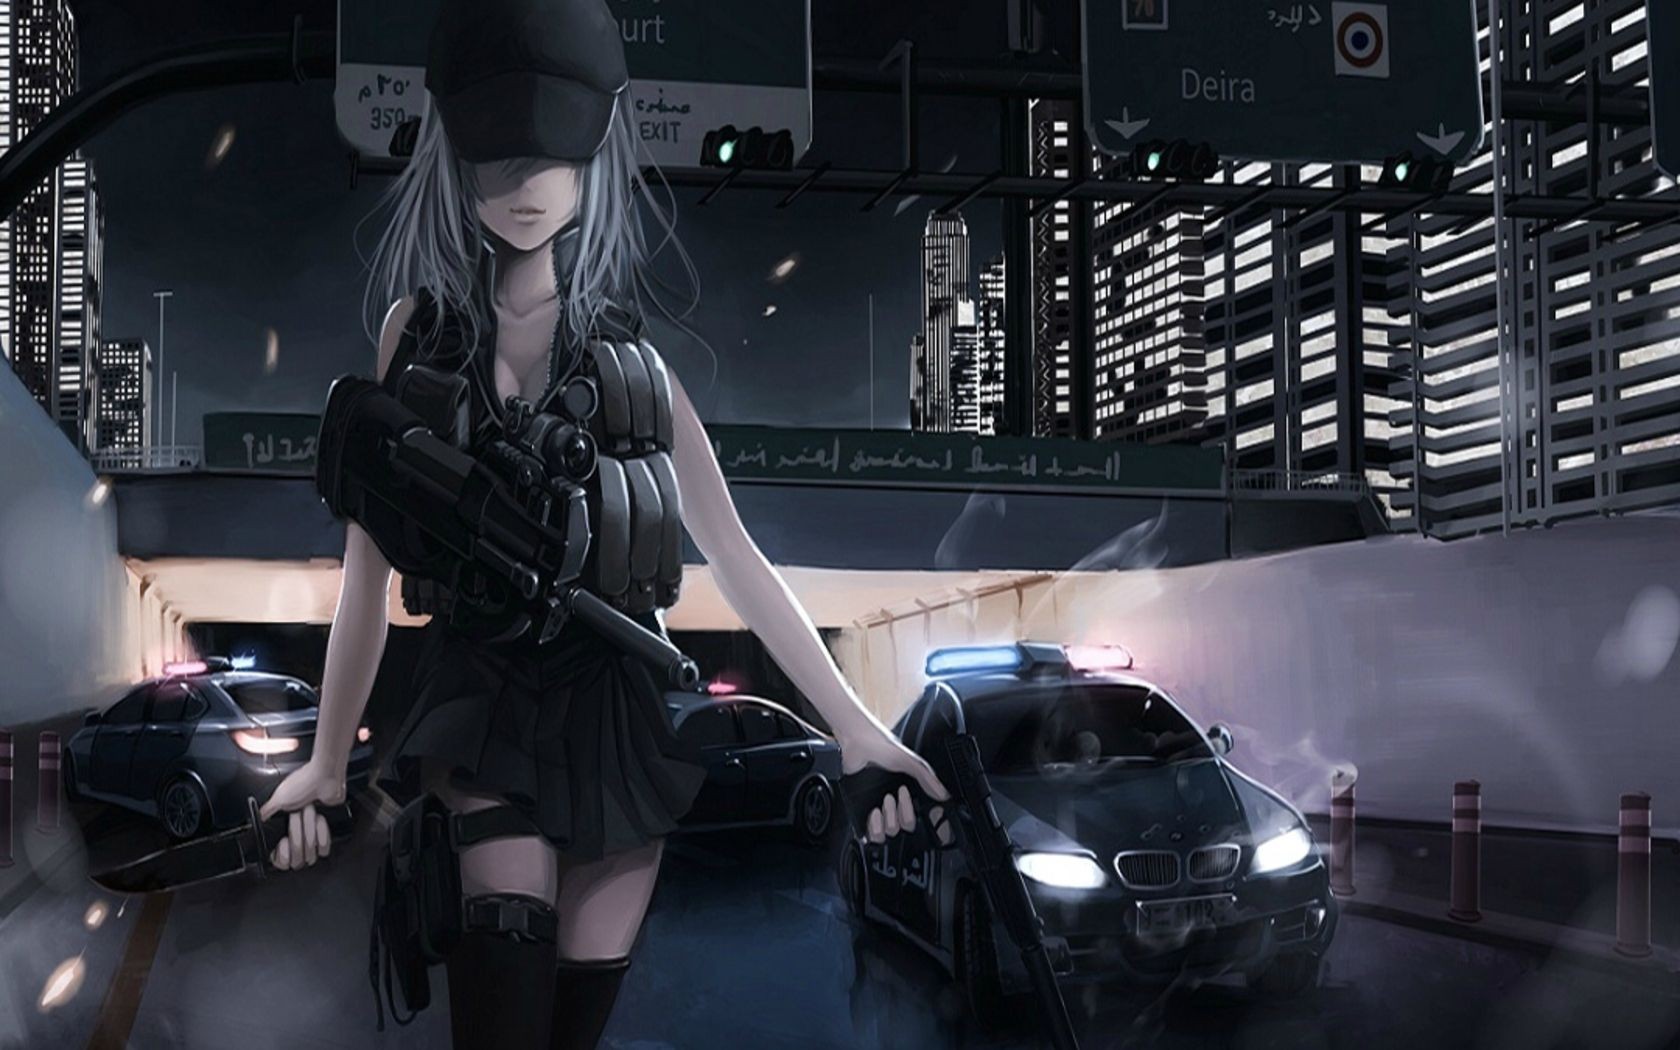 Anime original characters girls fn scar gun headphones Play Gaming Mat Desk  | eBay